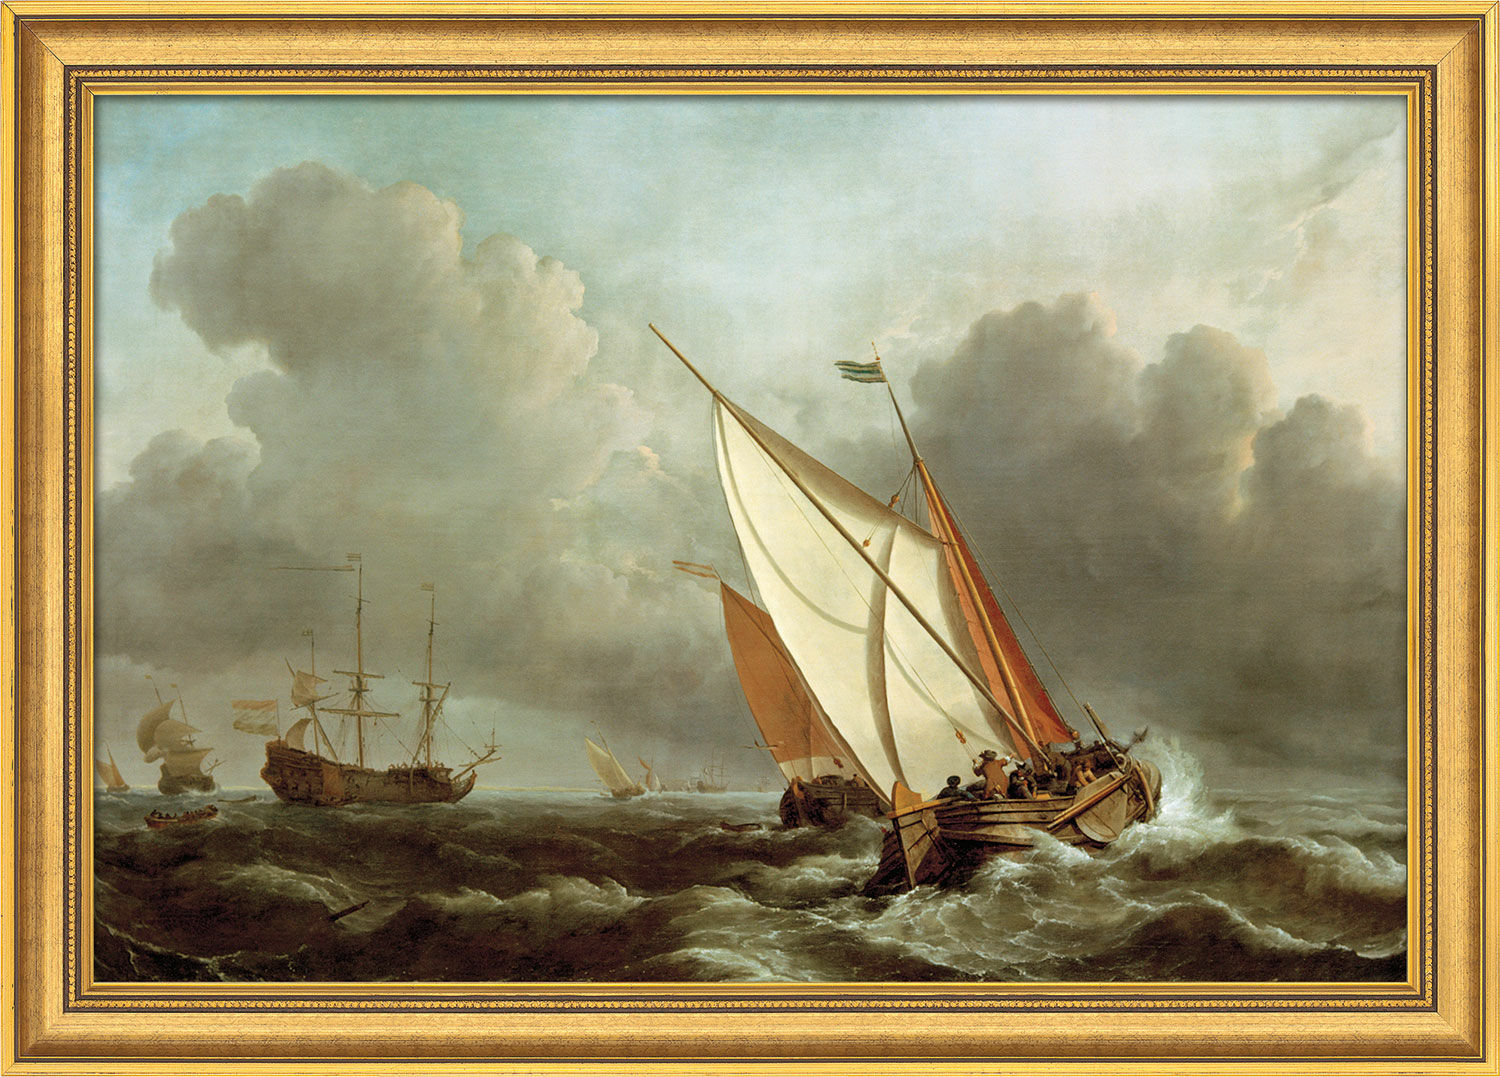 Billede "Skib i et stormfuldt hav" (1671), indrammet von Willem van de Velde